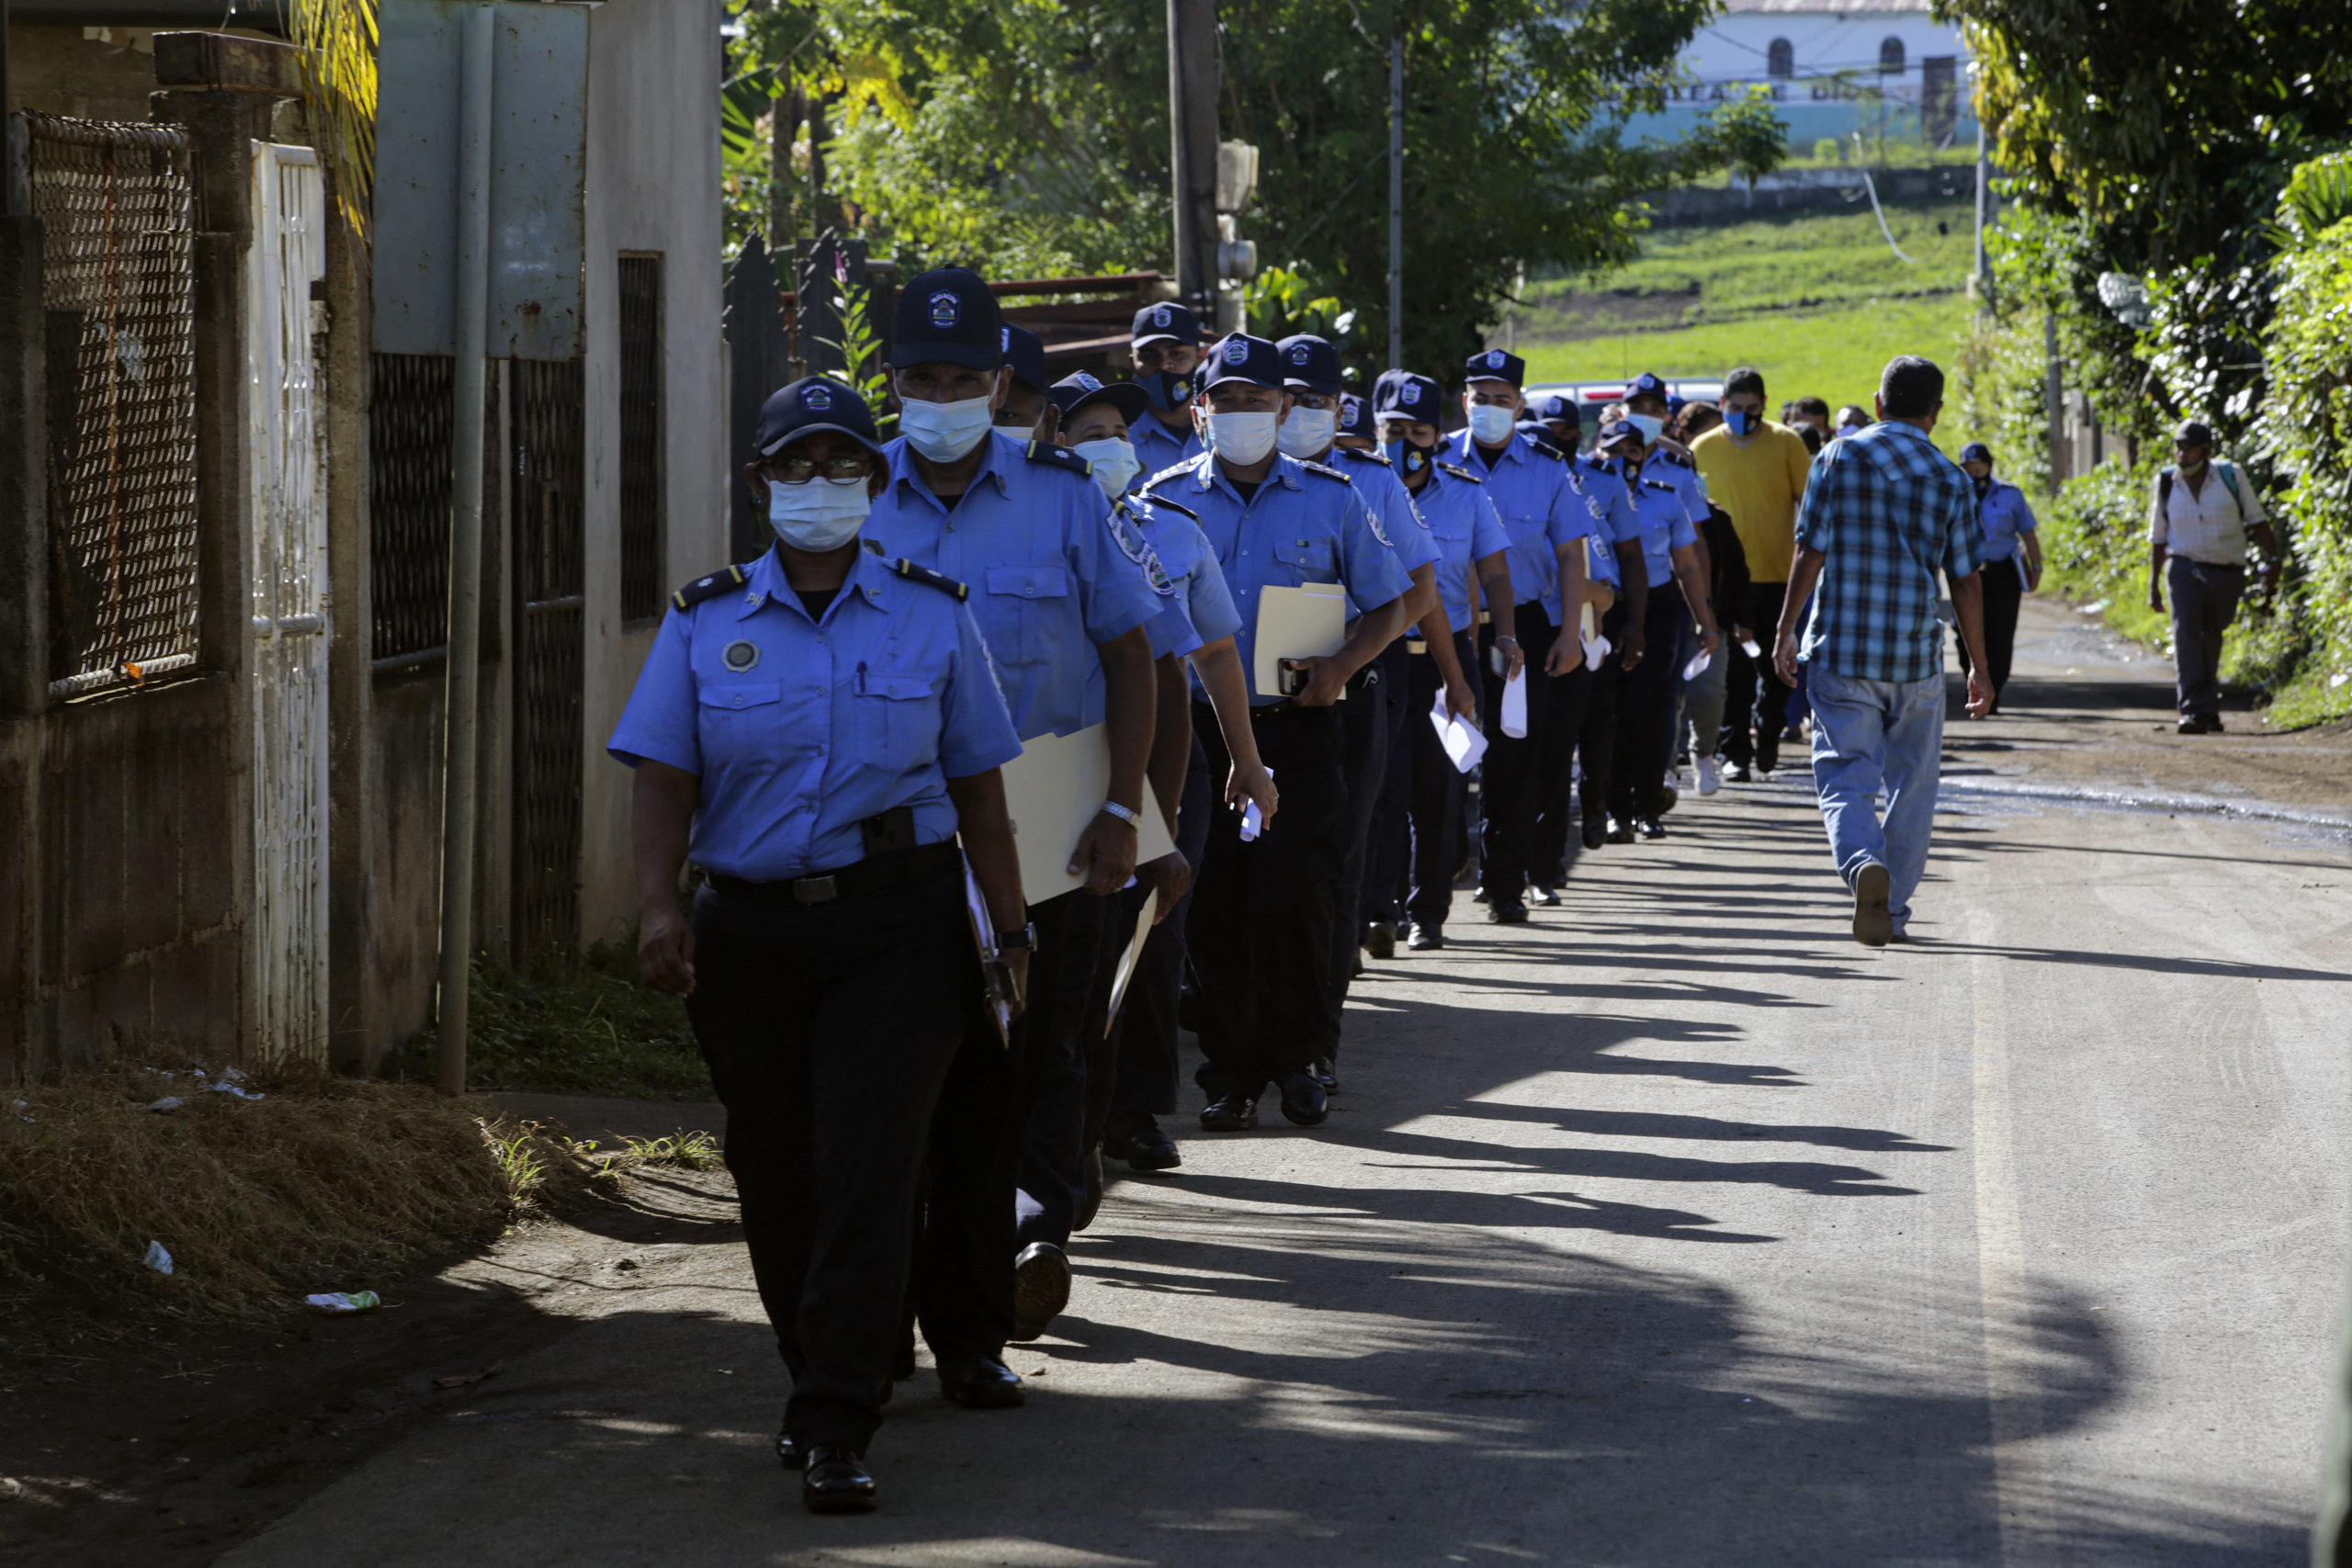 Eleições da Nicarágua: nem livres nem justas